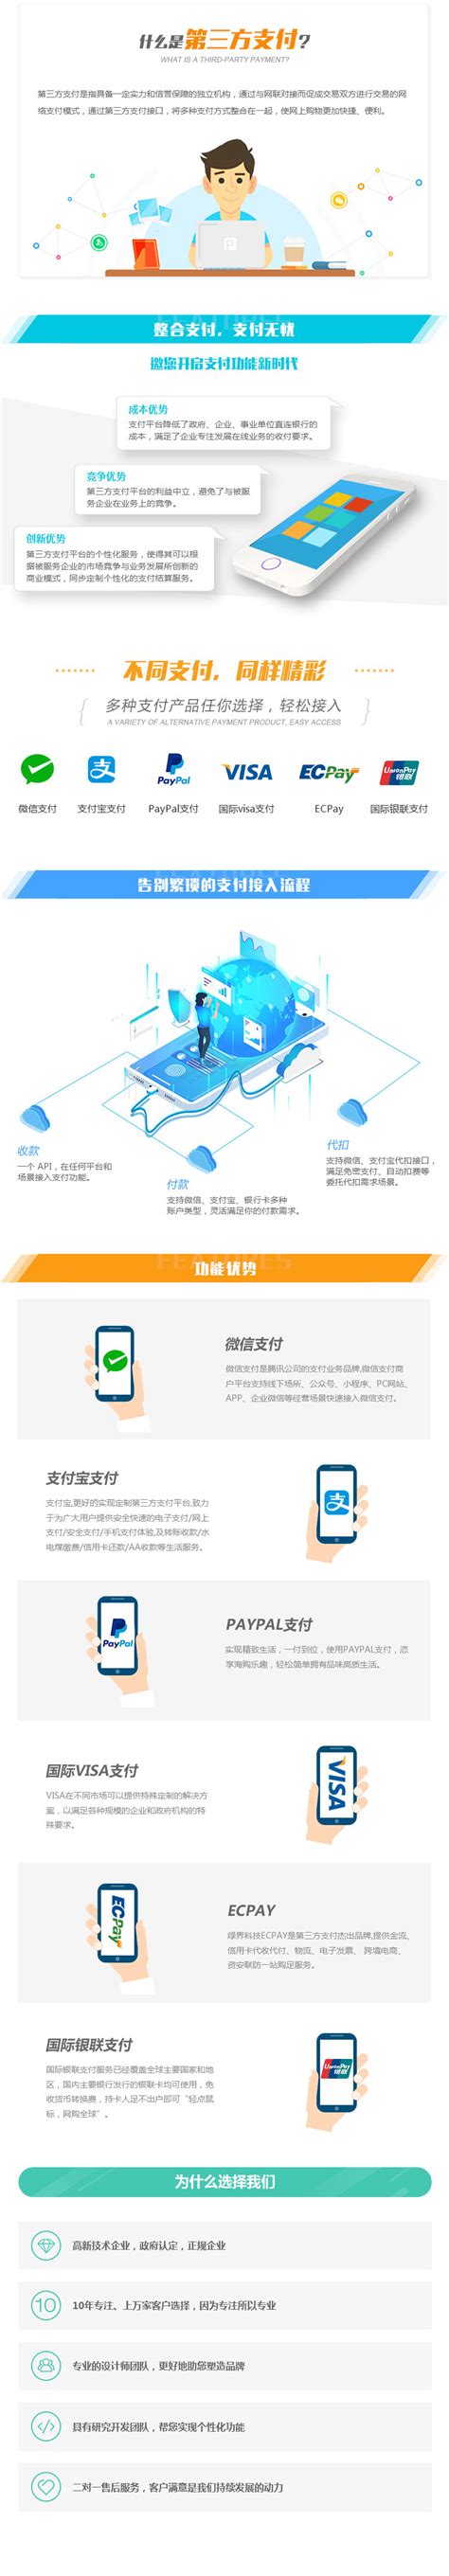 2017年杭州市第二批重点工业技改投资项目拟认定名单公示-杭州软件开发公司